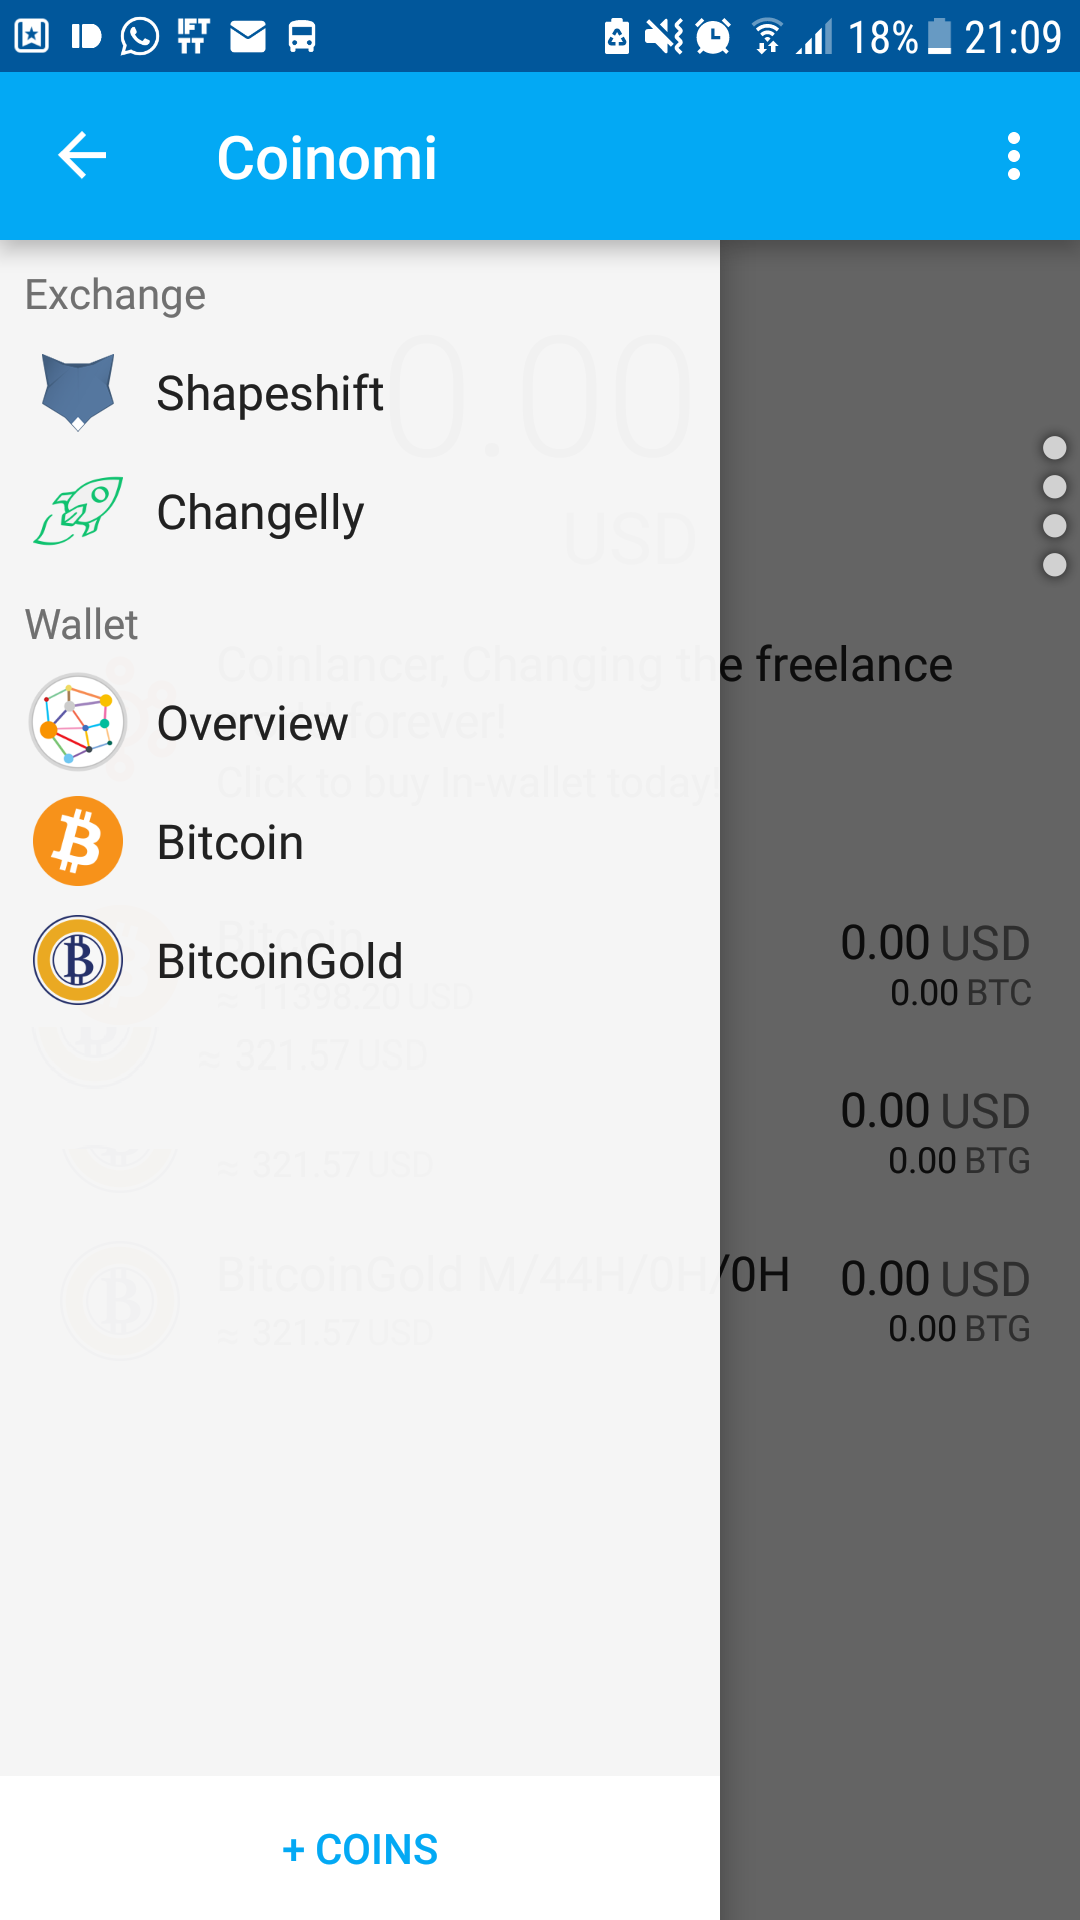 Bitcoin Gold Blockc!   haininfo Tokencard Coin Cold Wallet Options - 